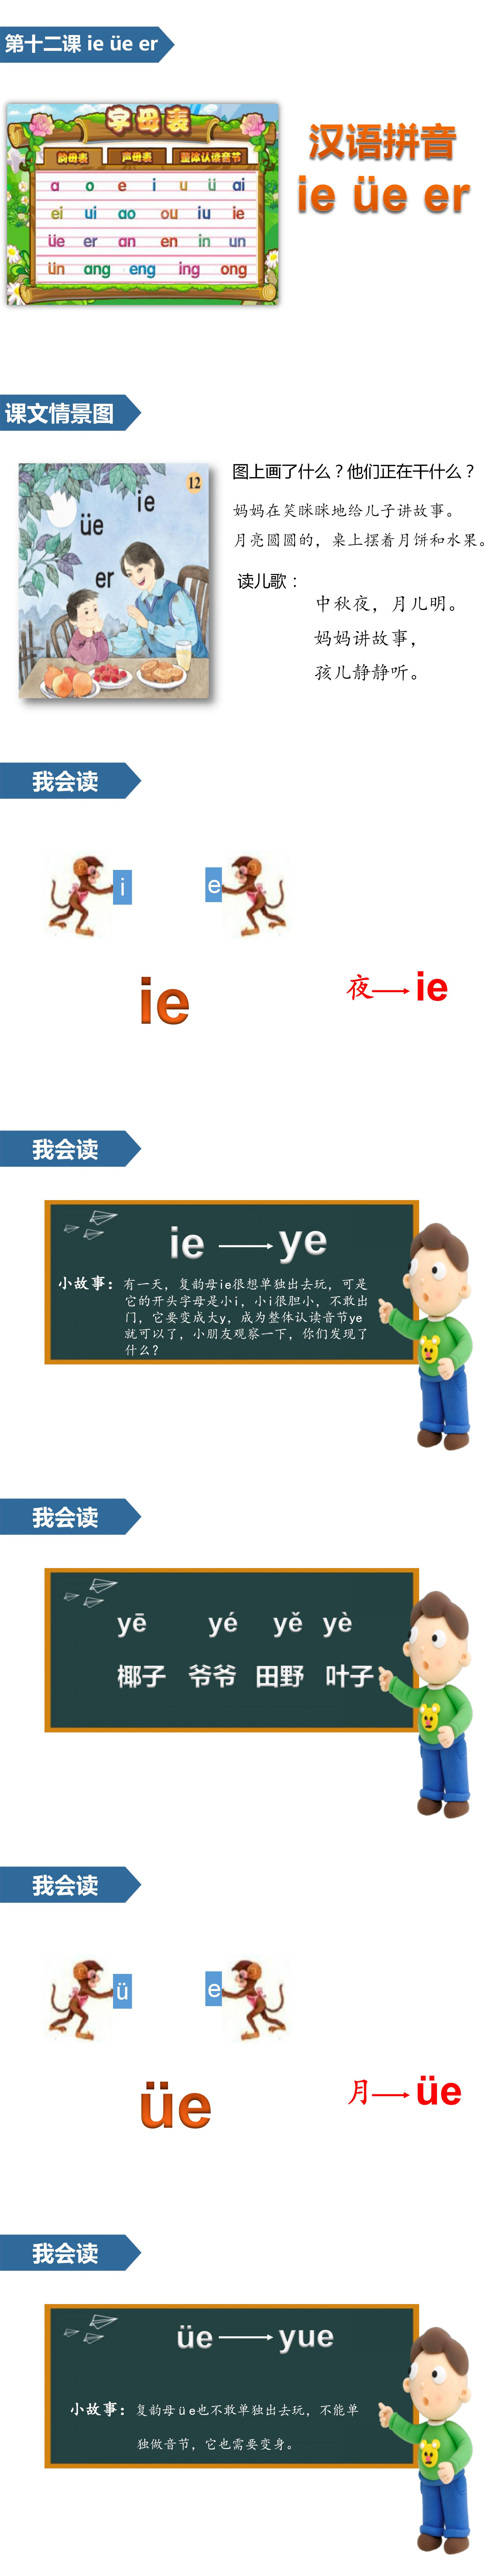 小学语文课件《ieüeer》汉语拼音PPT模板